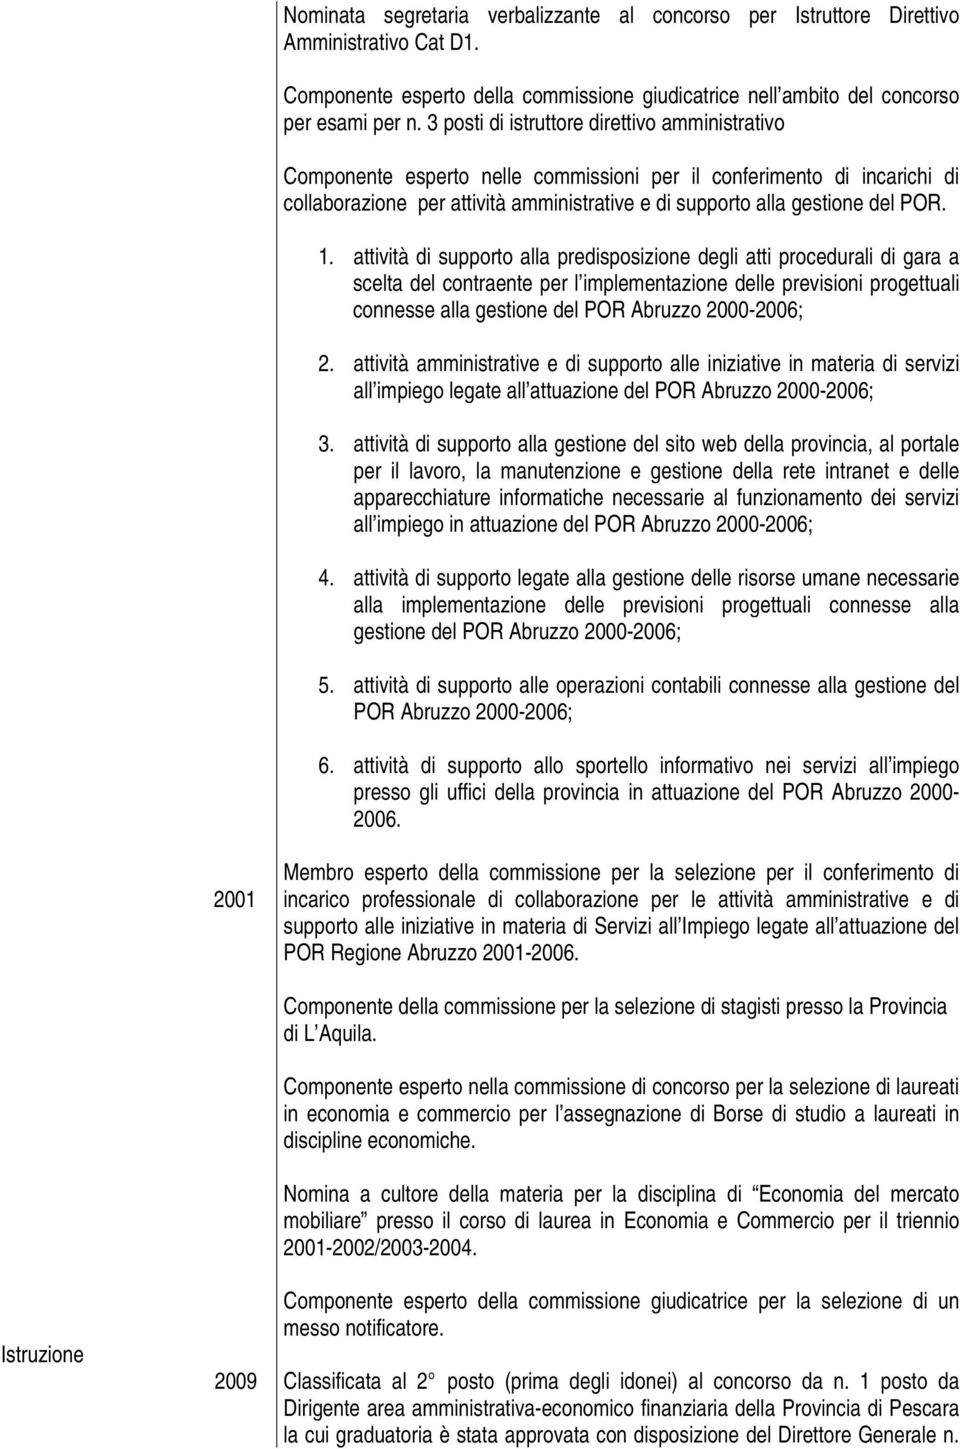 1. attività di supporto alla predisposizione degli atti procedurali di gara a scelta del contraente per l implementazione delle previsioni progettuali connesse alla gestione del POR Abruzzo